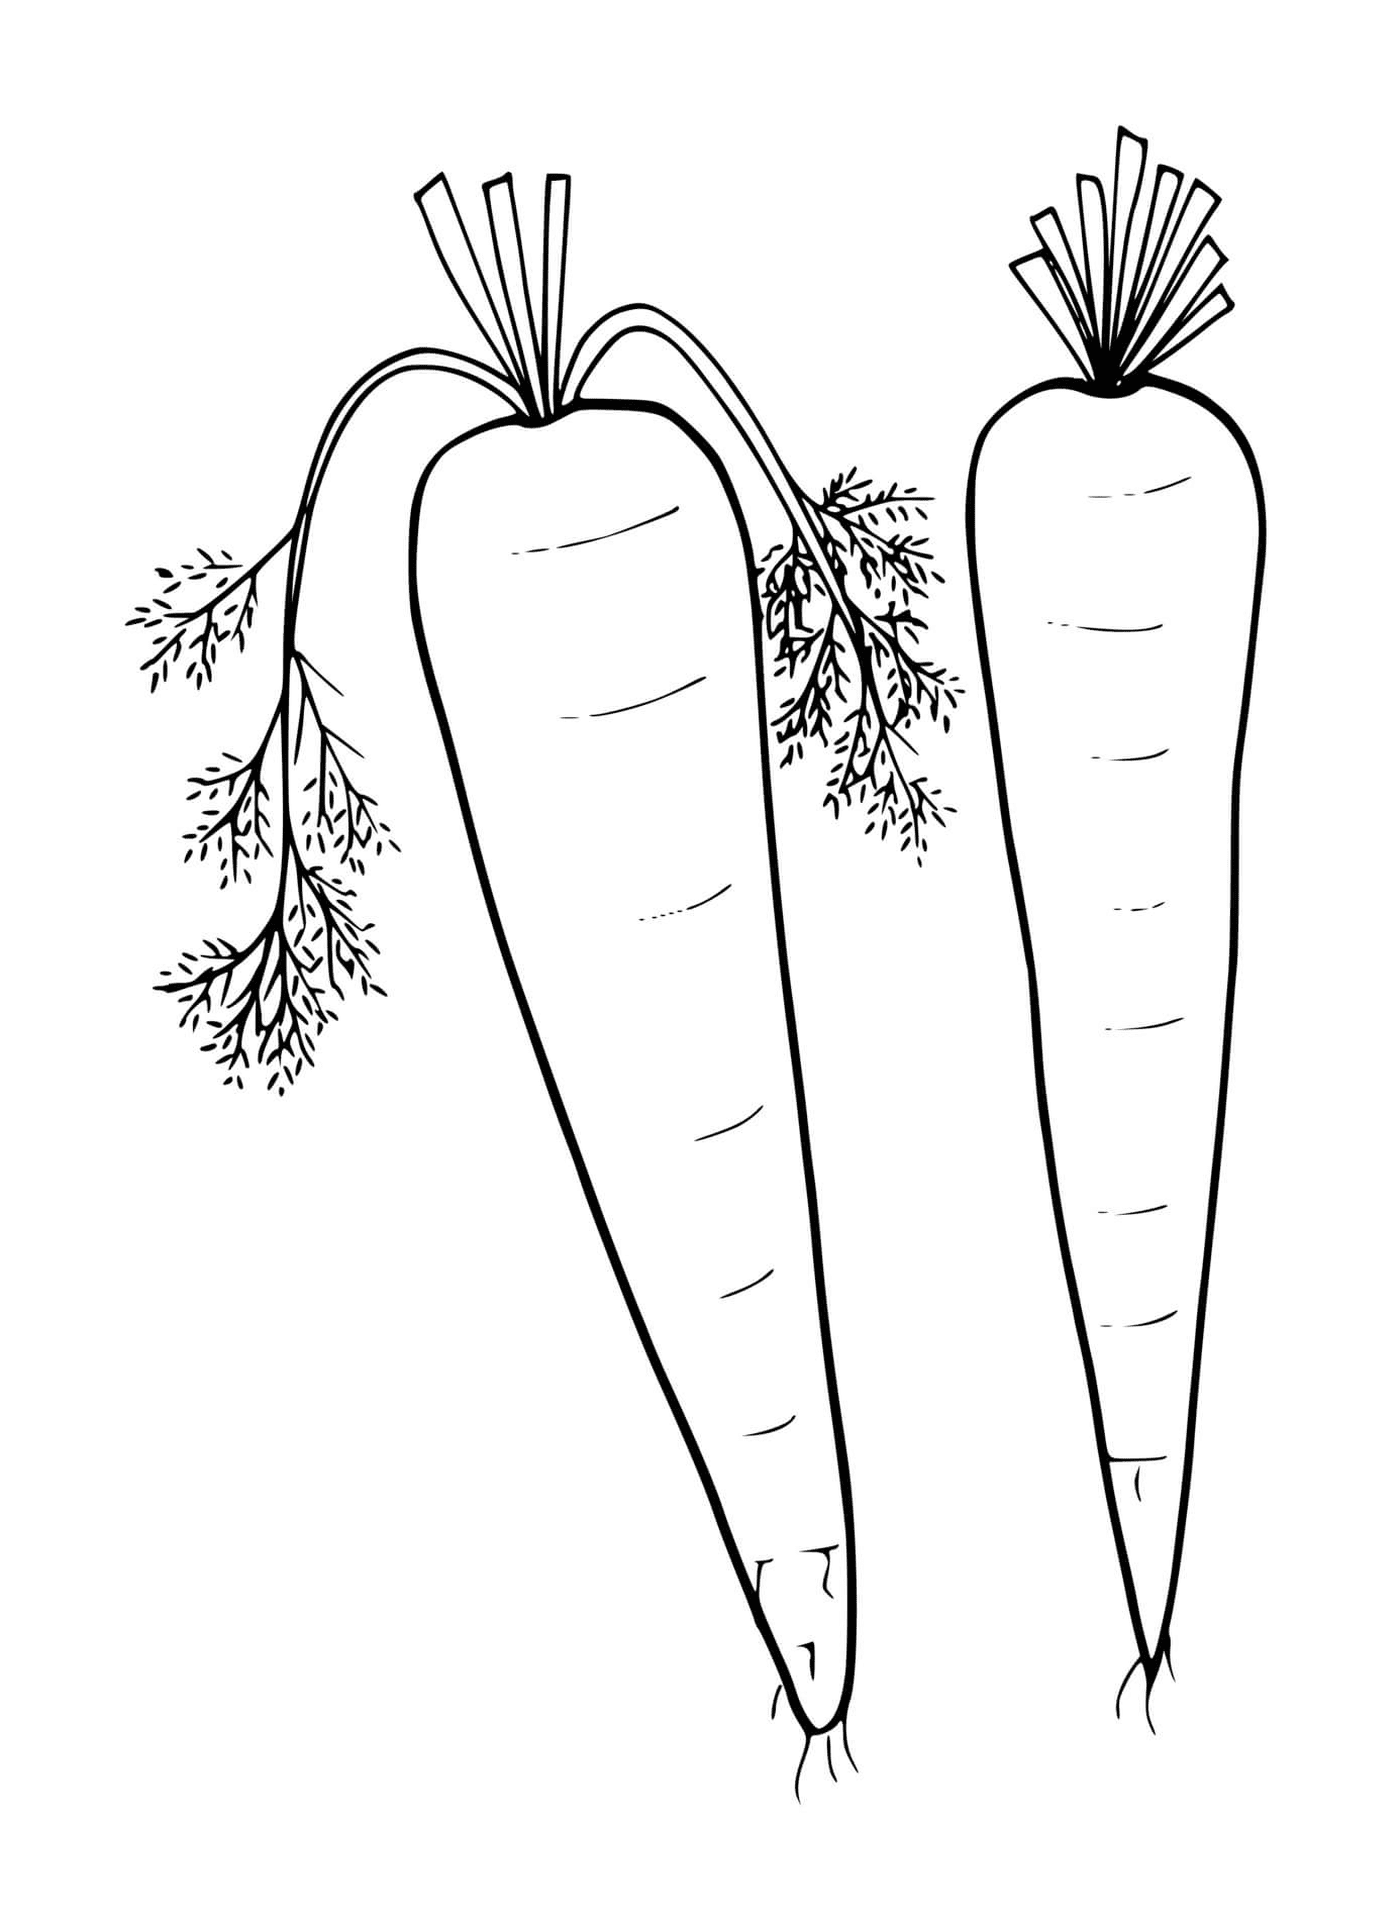  Свежая морковка, две морковки на белом фоне 